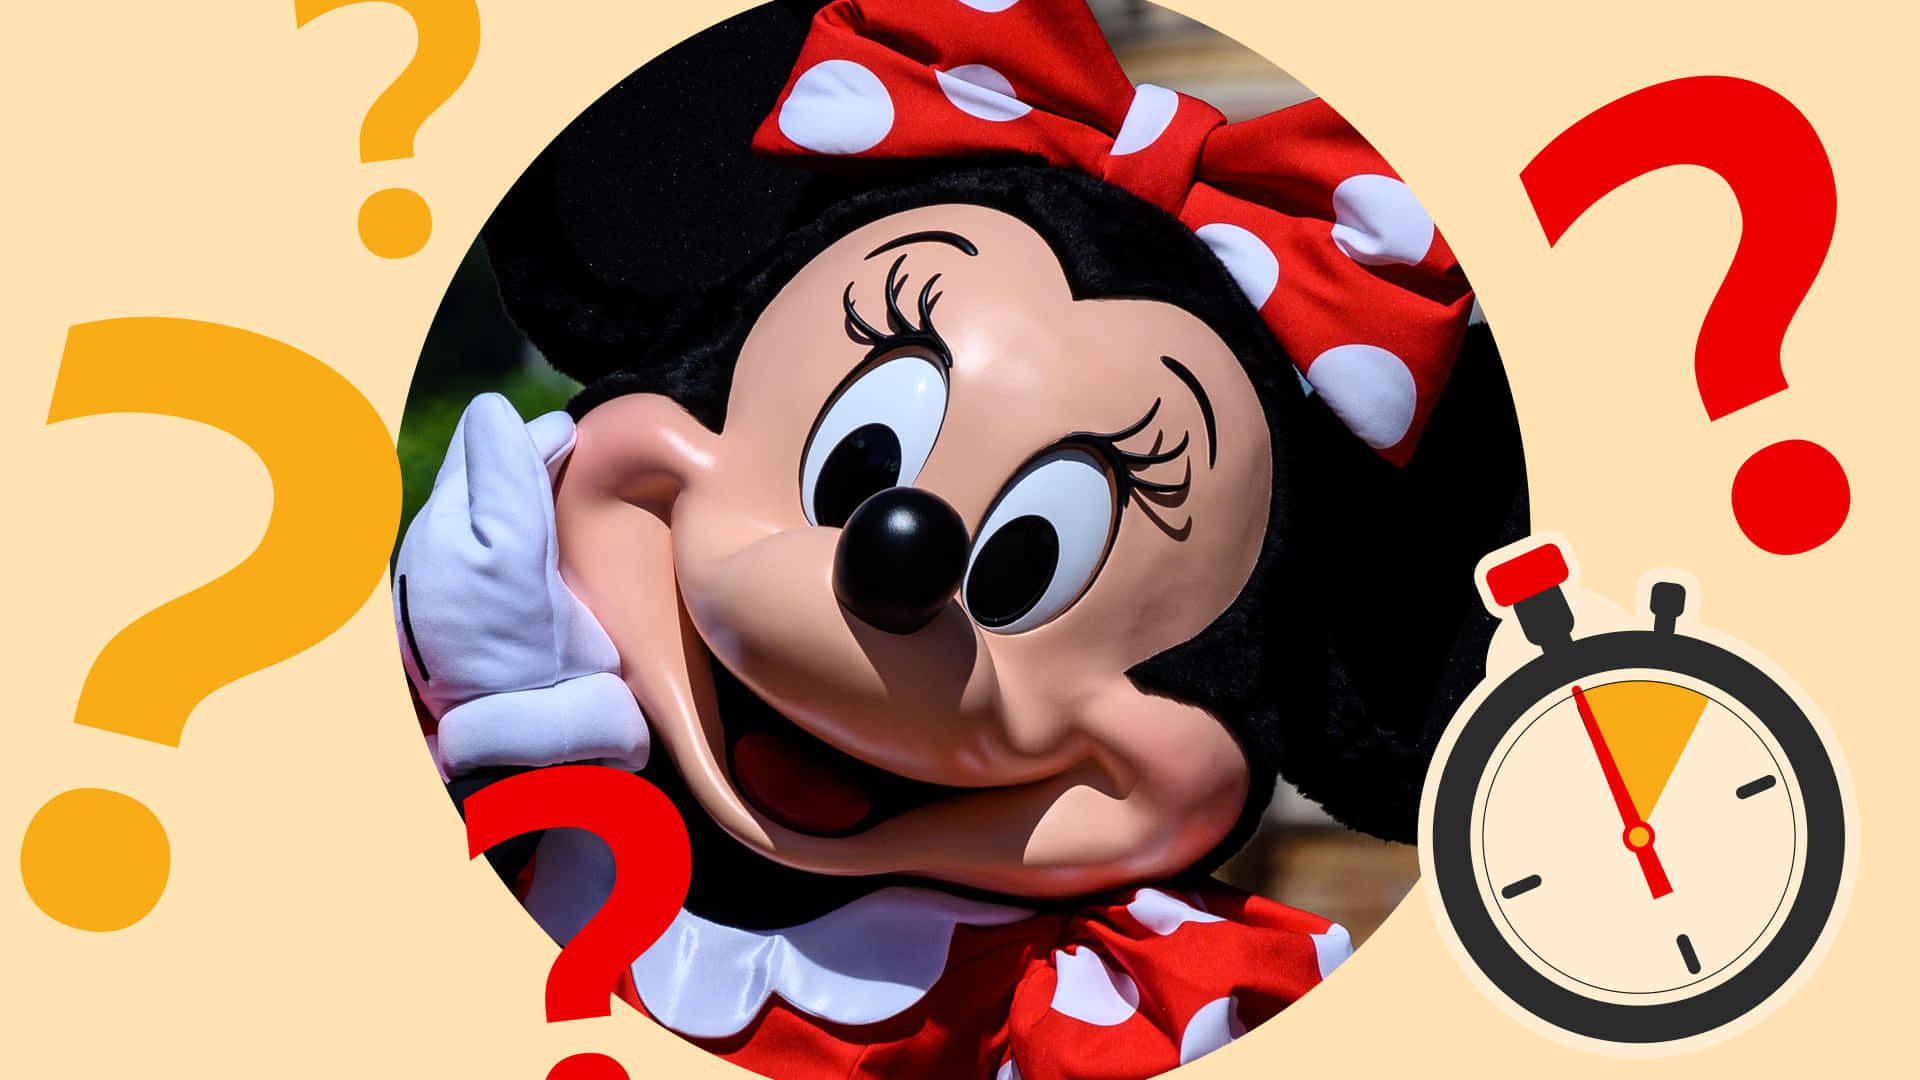 Feiernsie Das Neue Jahr Mit Mickey Mouse Wallpaper